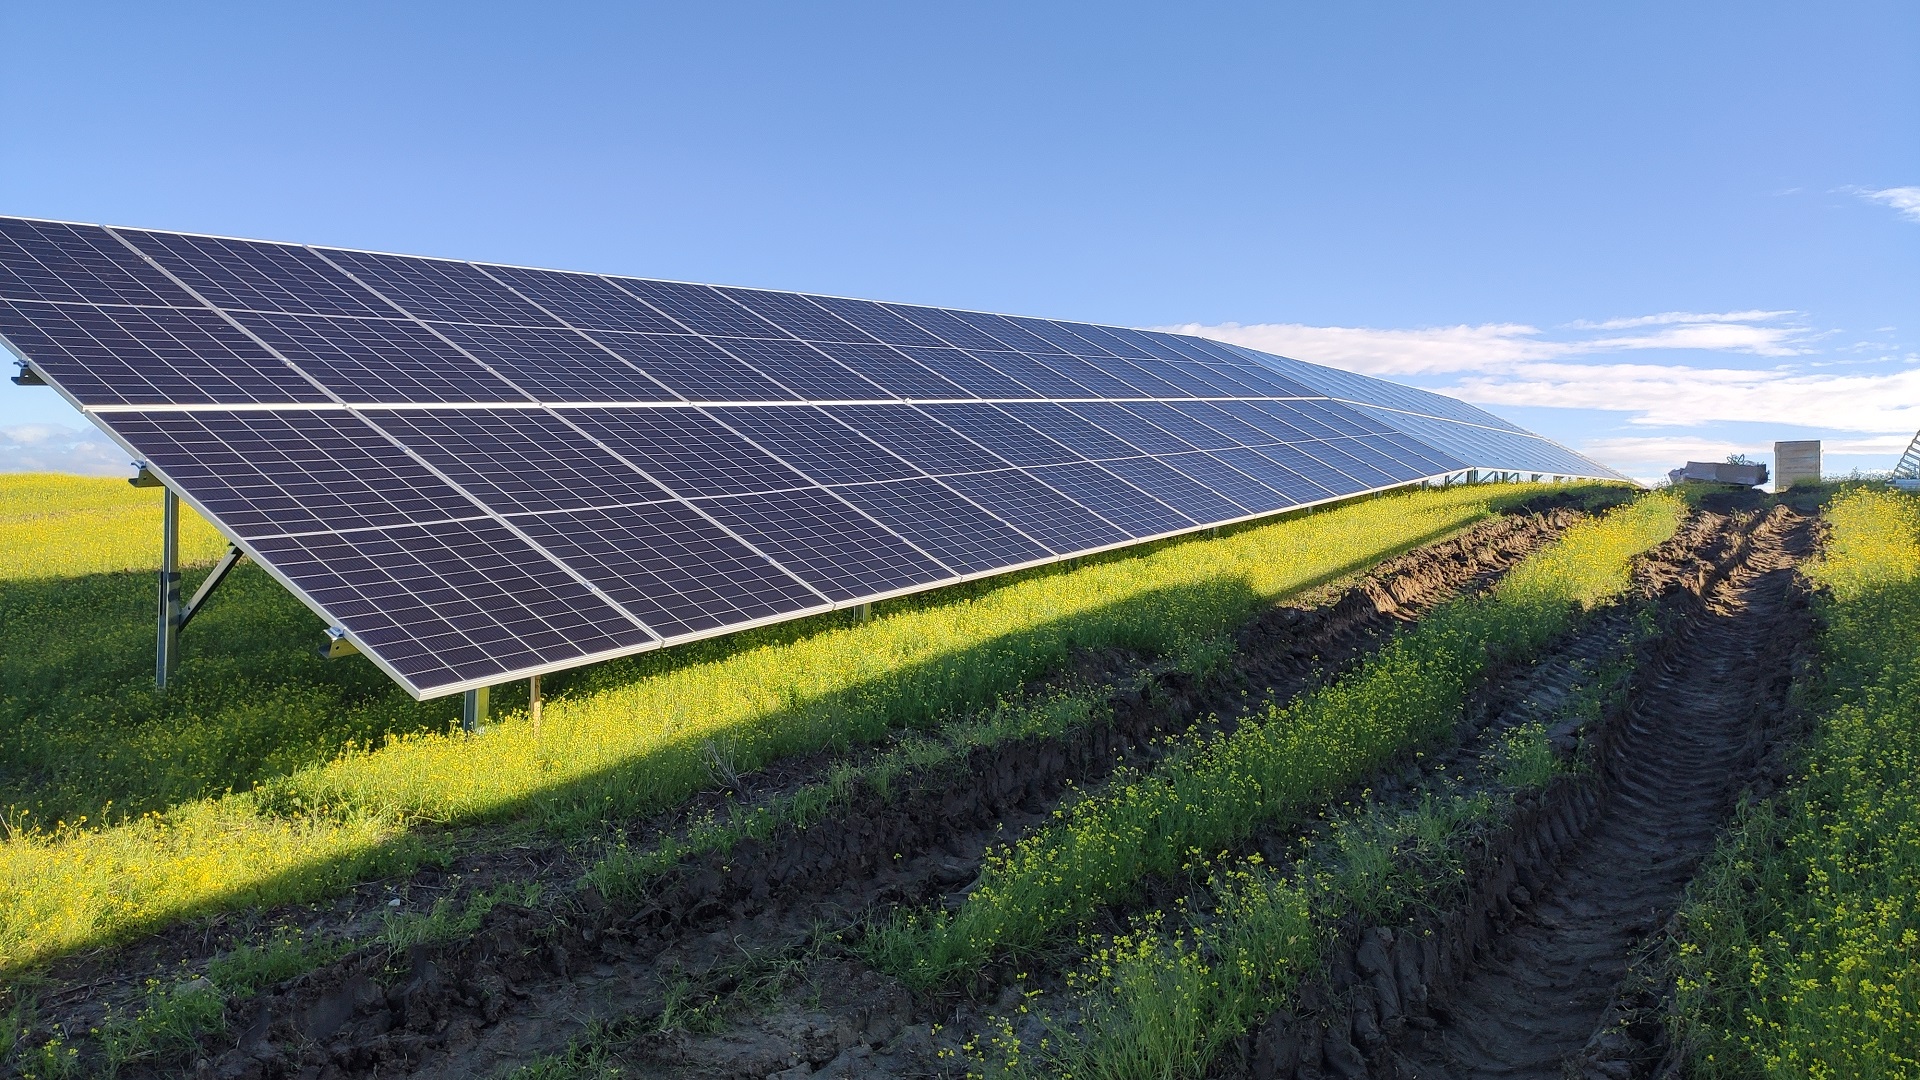 Instalación solar fotovoltaica de 4,163MWp de conexión a red en Lagartera y Oropesa (Toledo)